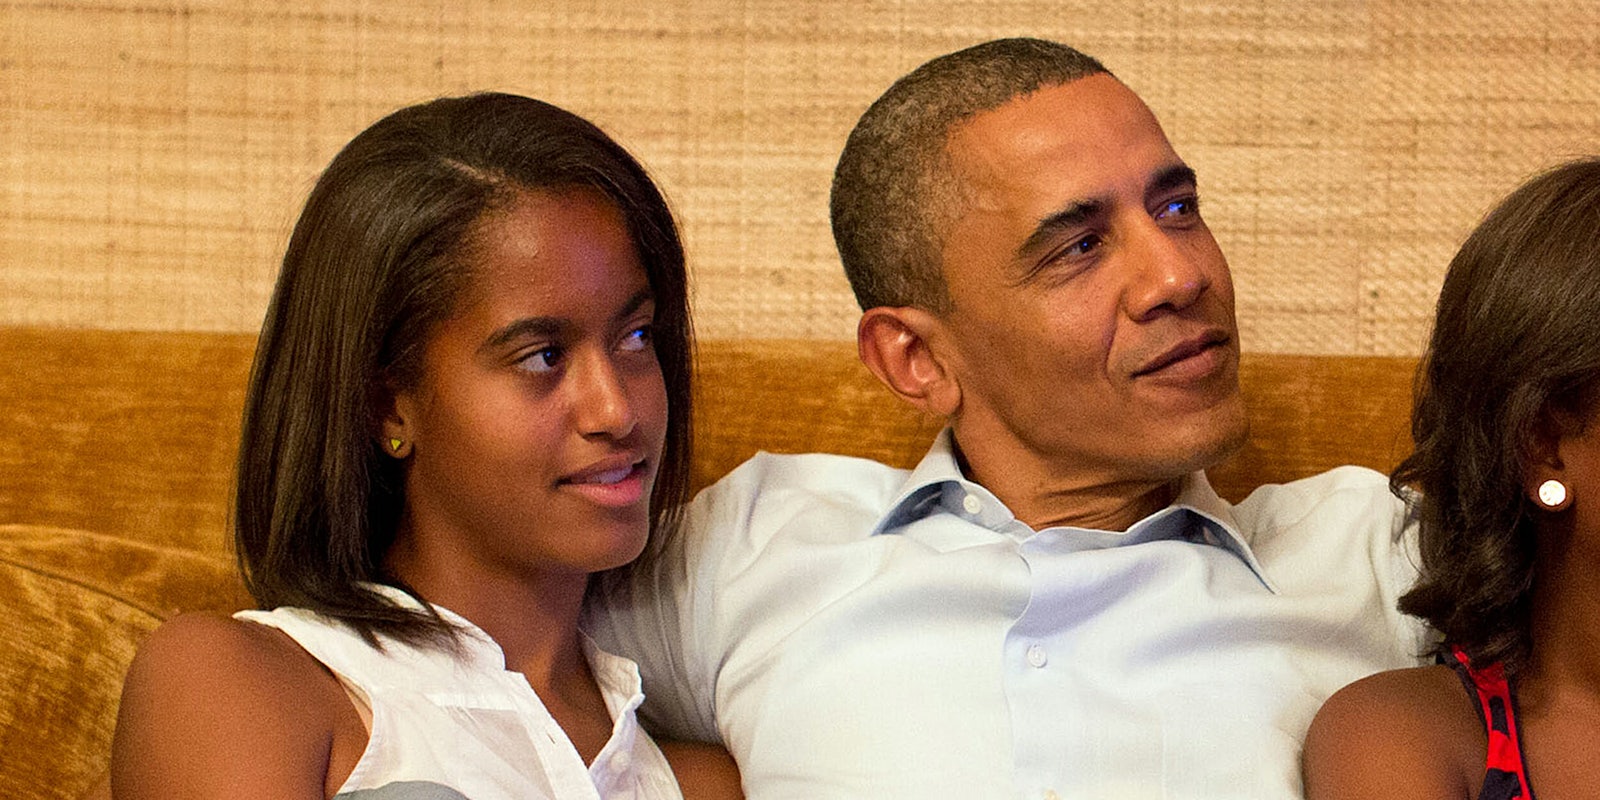 Malia and Barack Obama